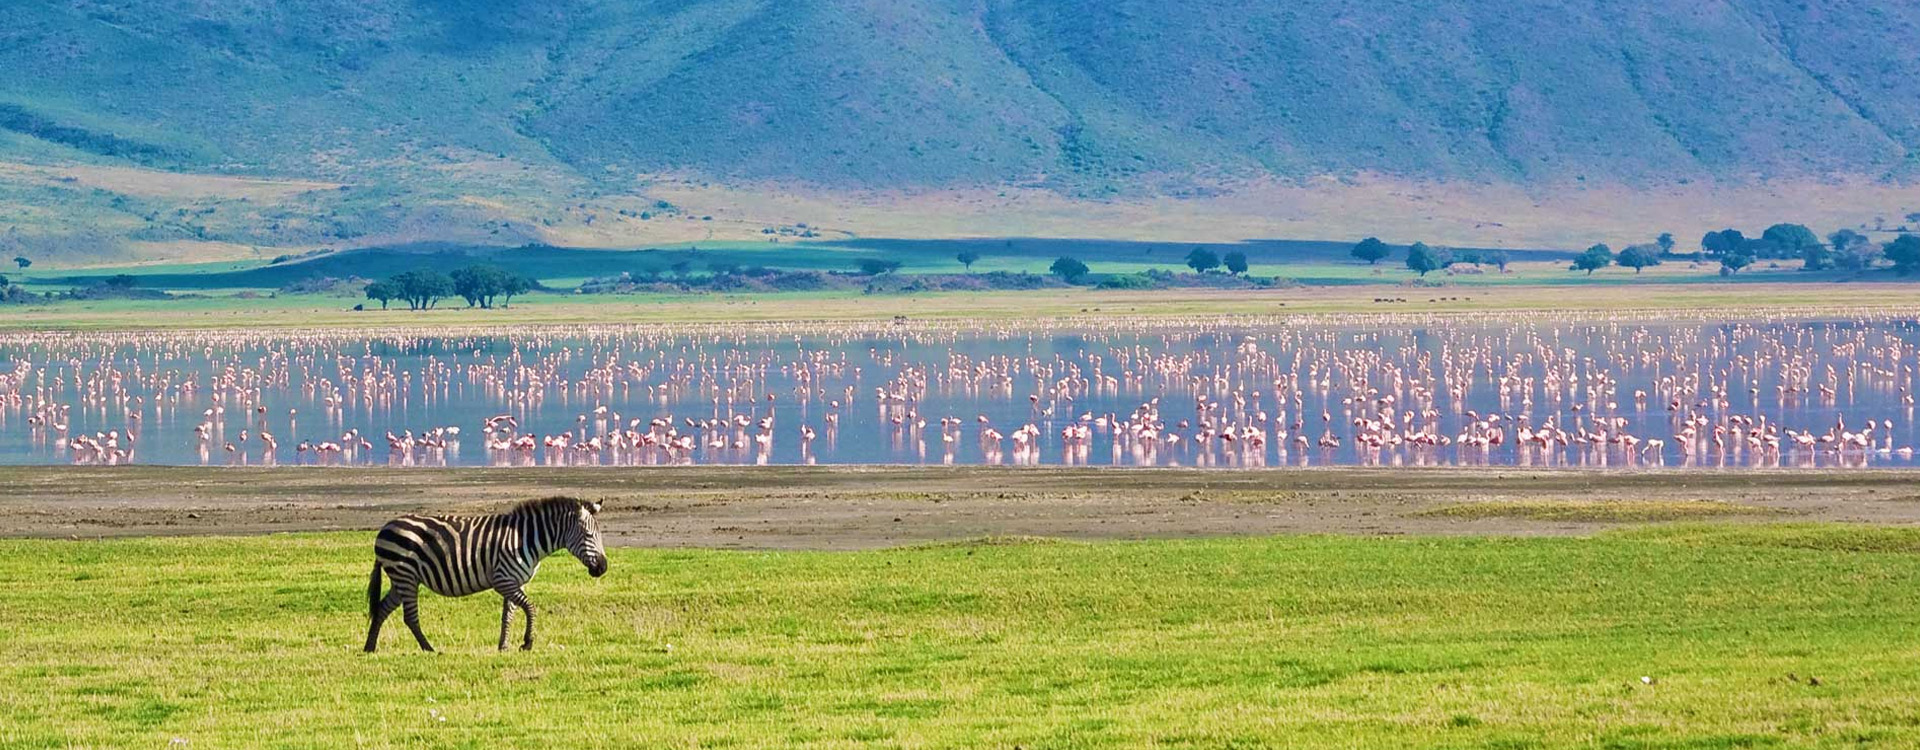 Ngorongoro Creater Day Trip